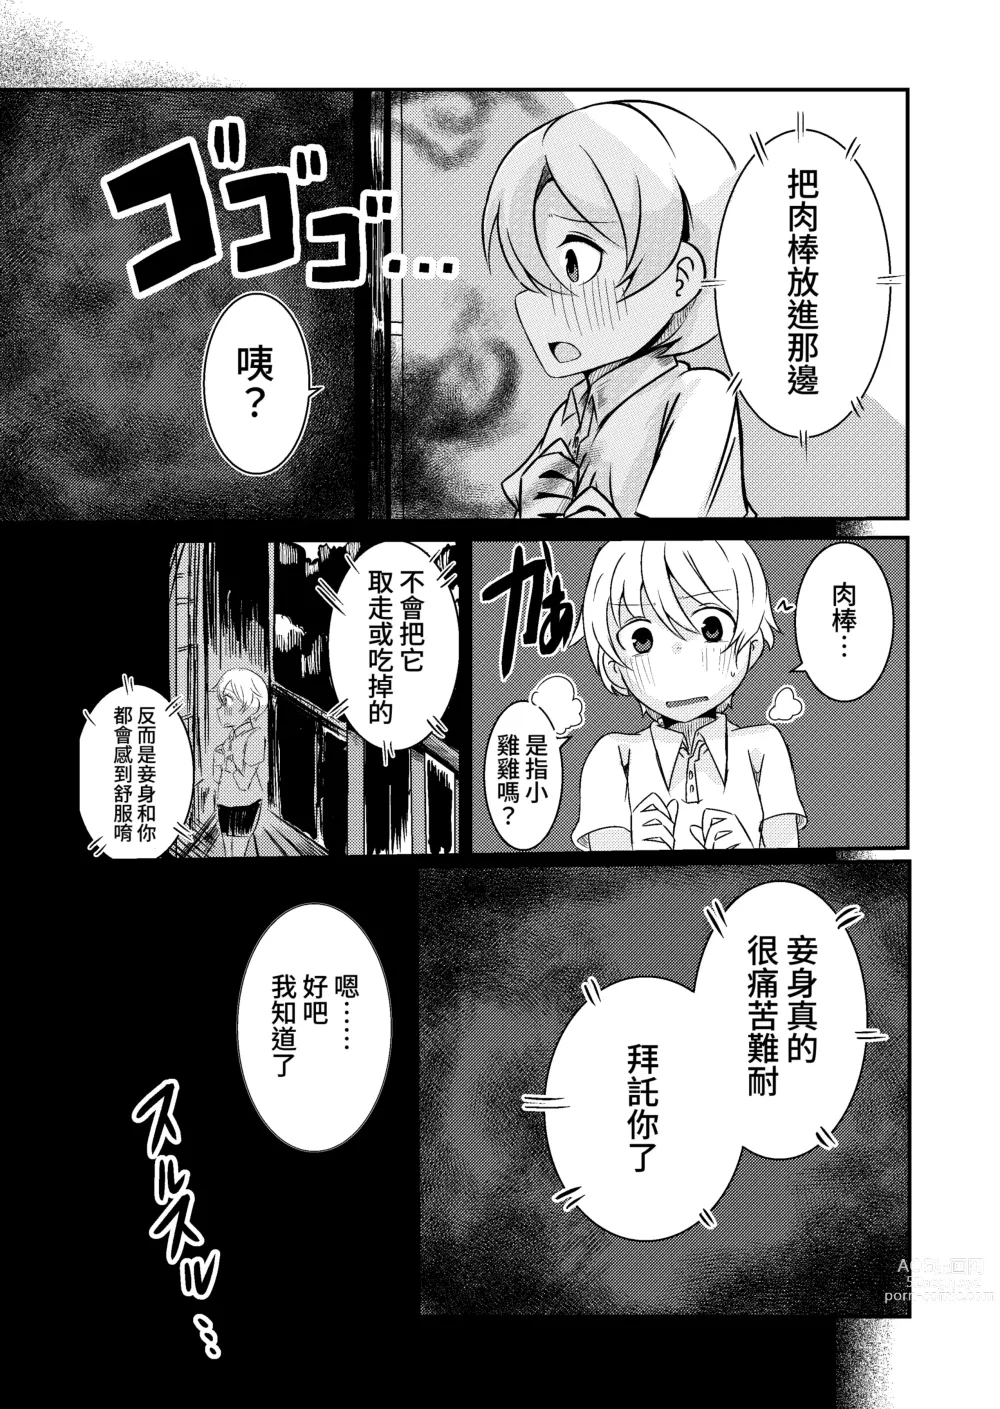 Page 5 of doujinshi Fuuin Hodoitara Damasare Tsukarete Shibo Shirage Jinsei Konna Kotonara Tokanakya Yokatta